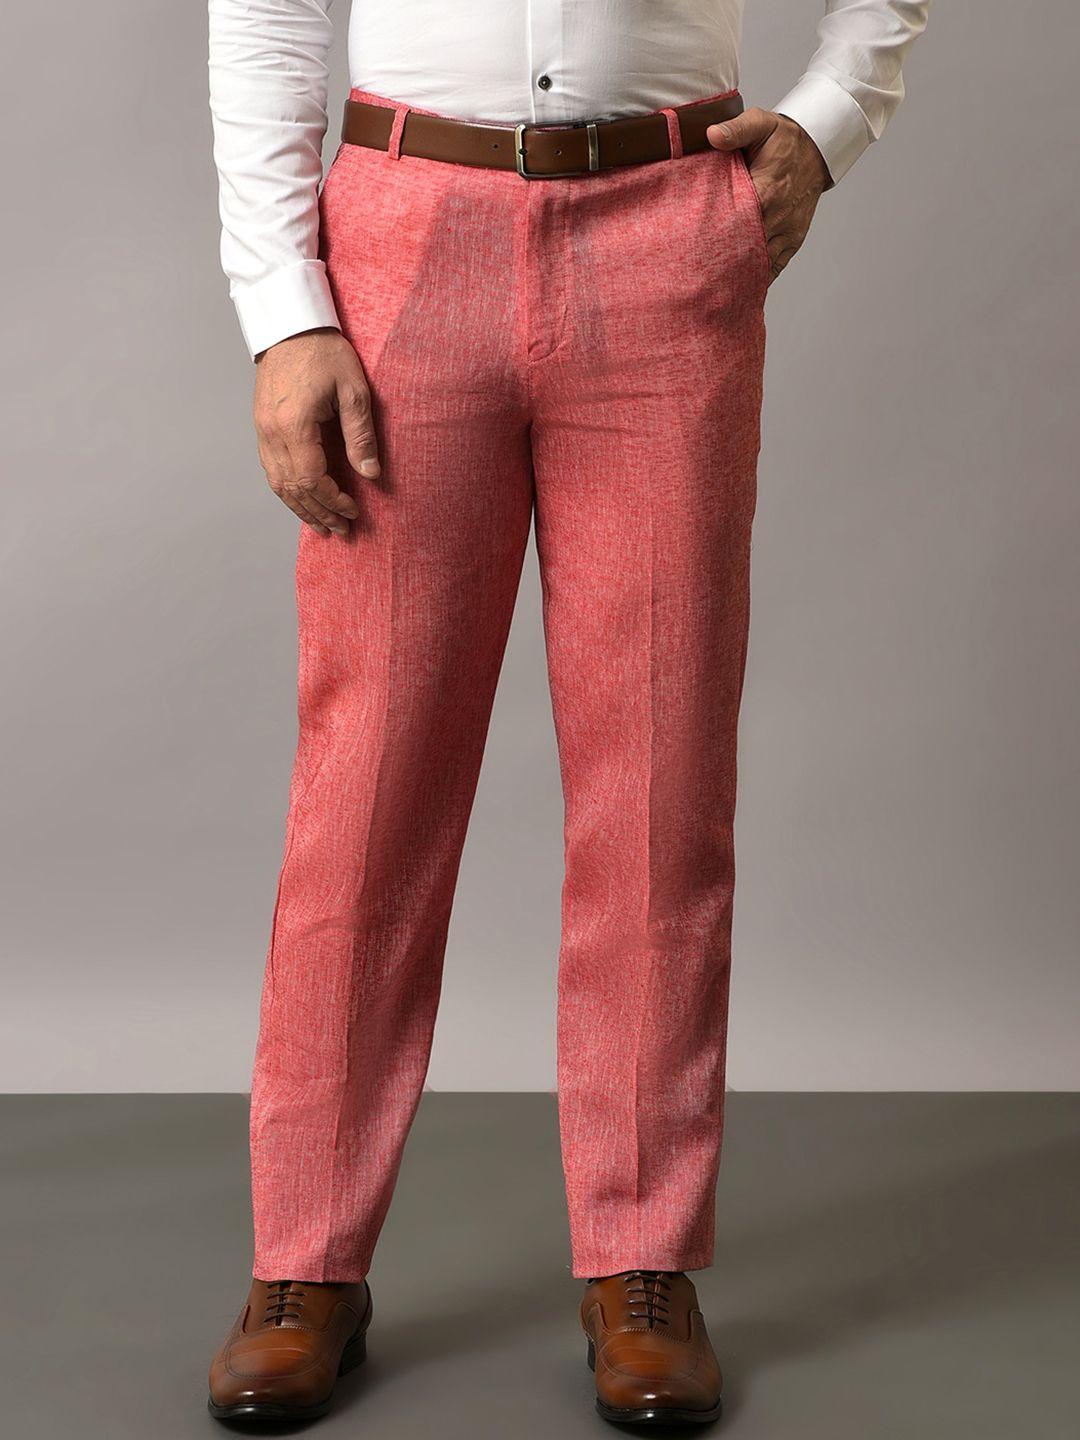 hangup-men-original-regular-fit-mid-rise-formal-trousers